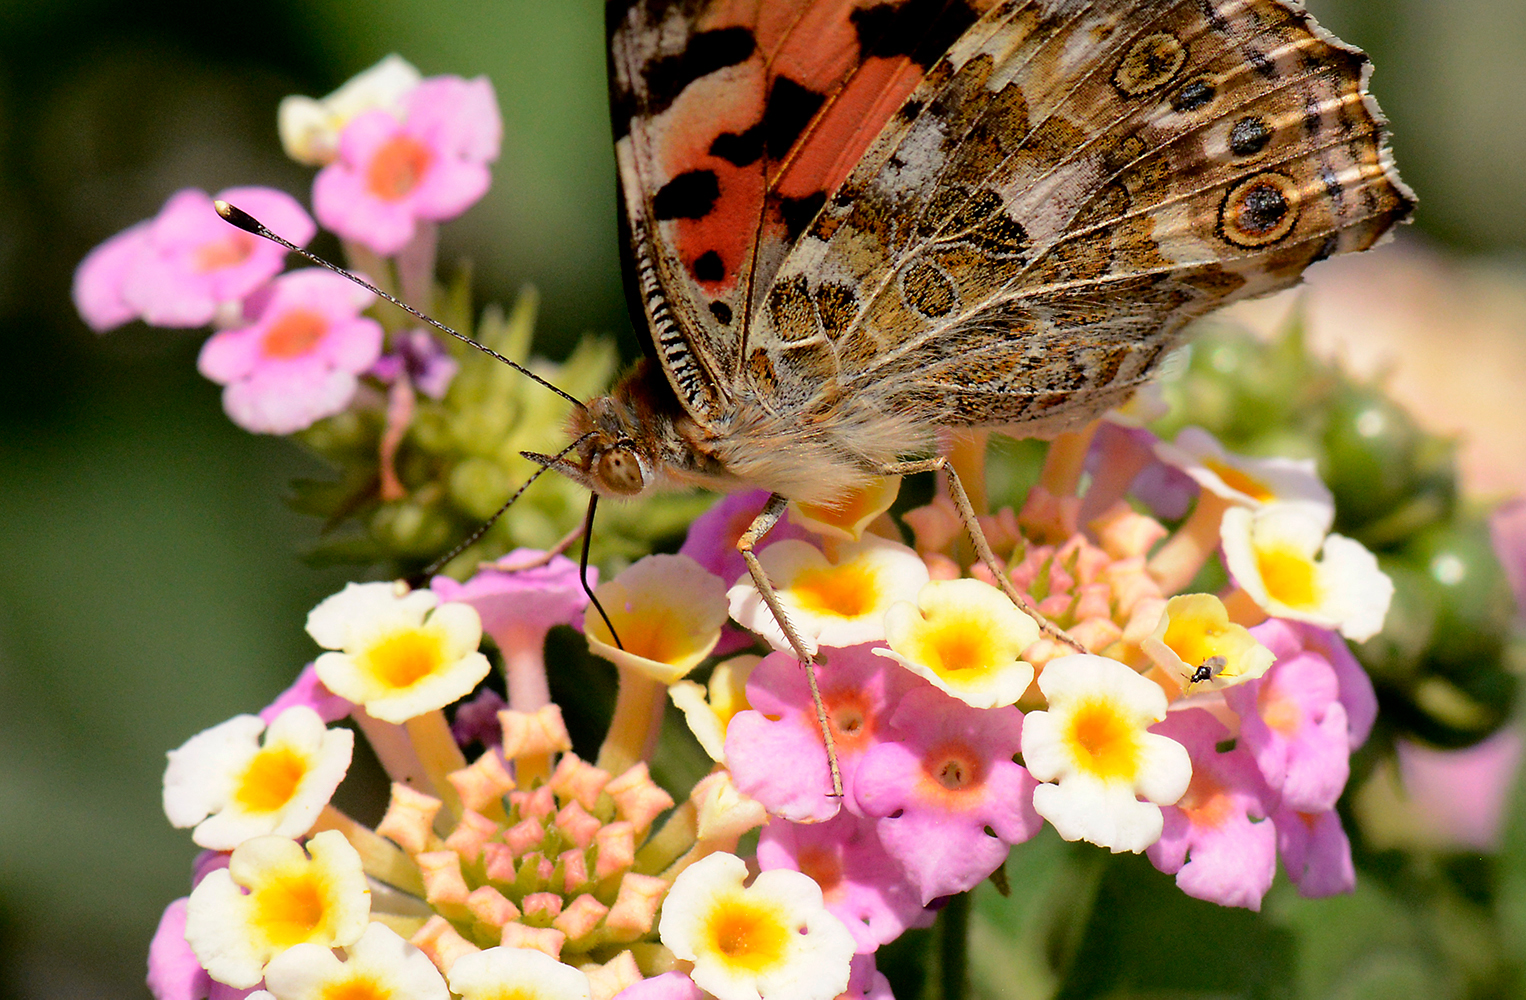 انتشار الفراشات في الحدائق وكأنها لوحة تشكيلية بوشاح مطرز بالأزهار